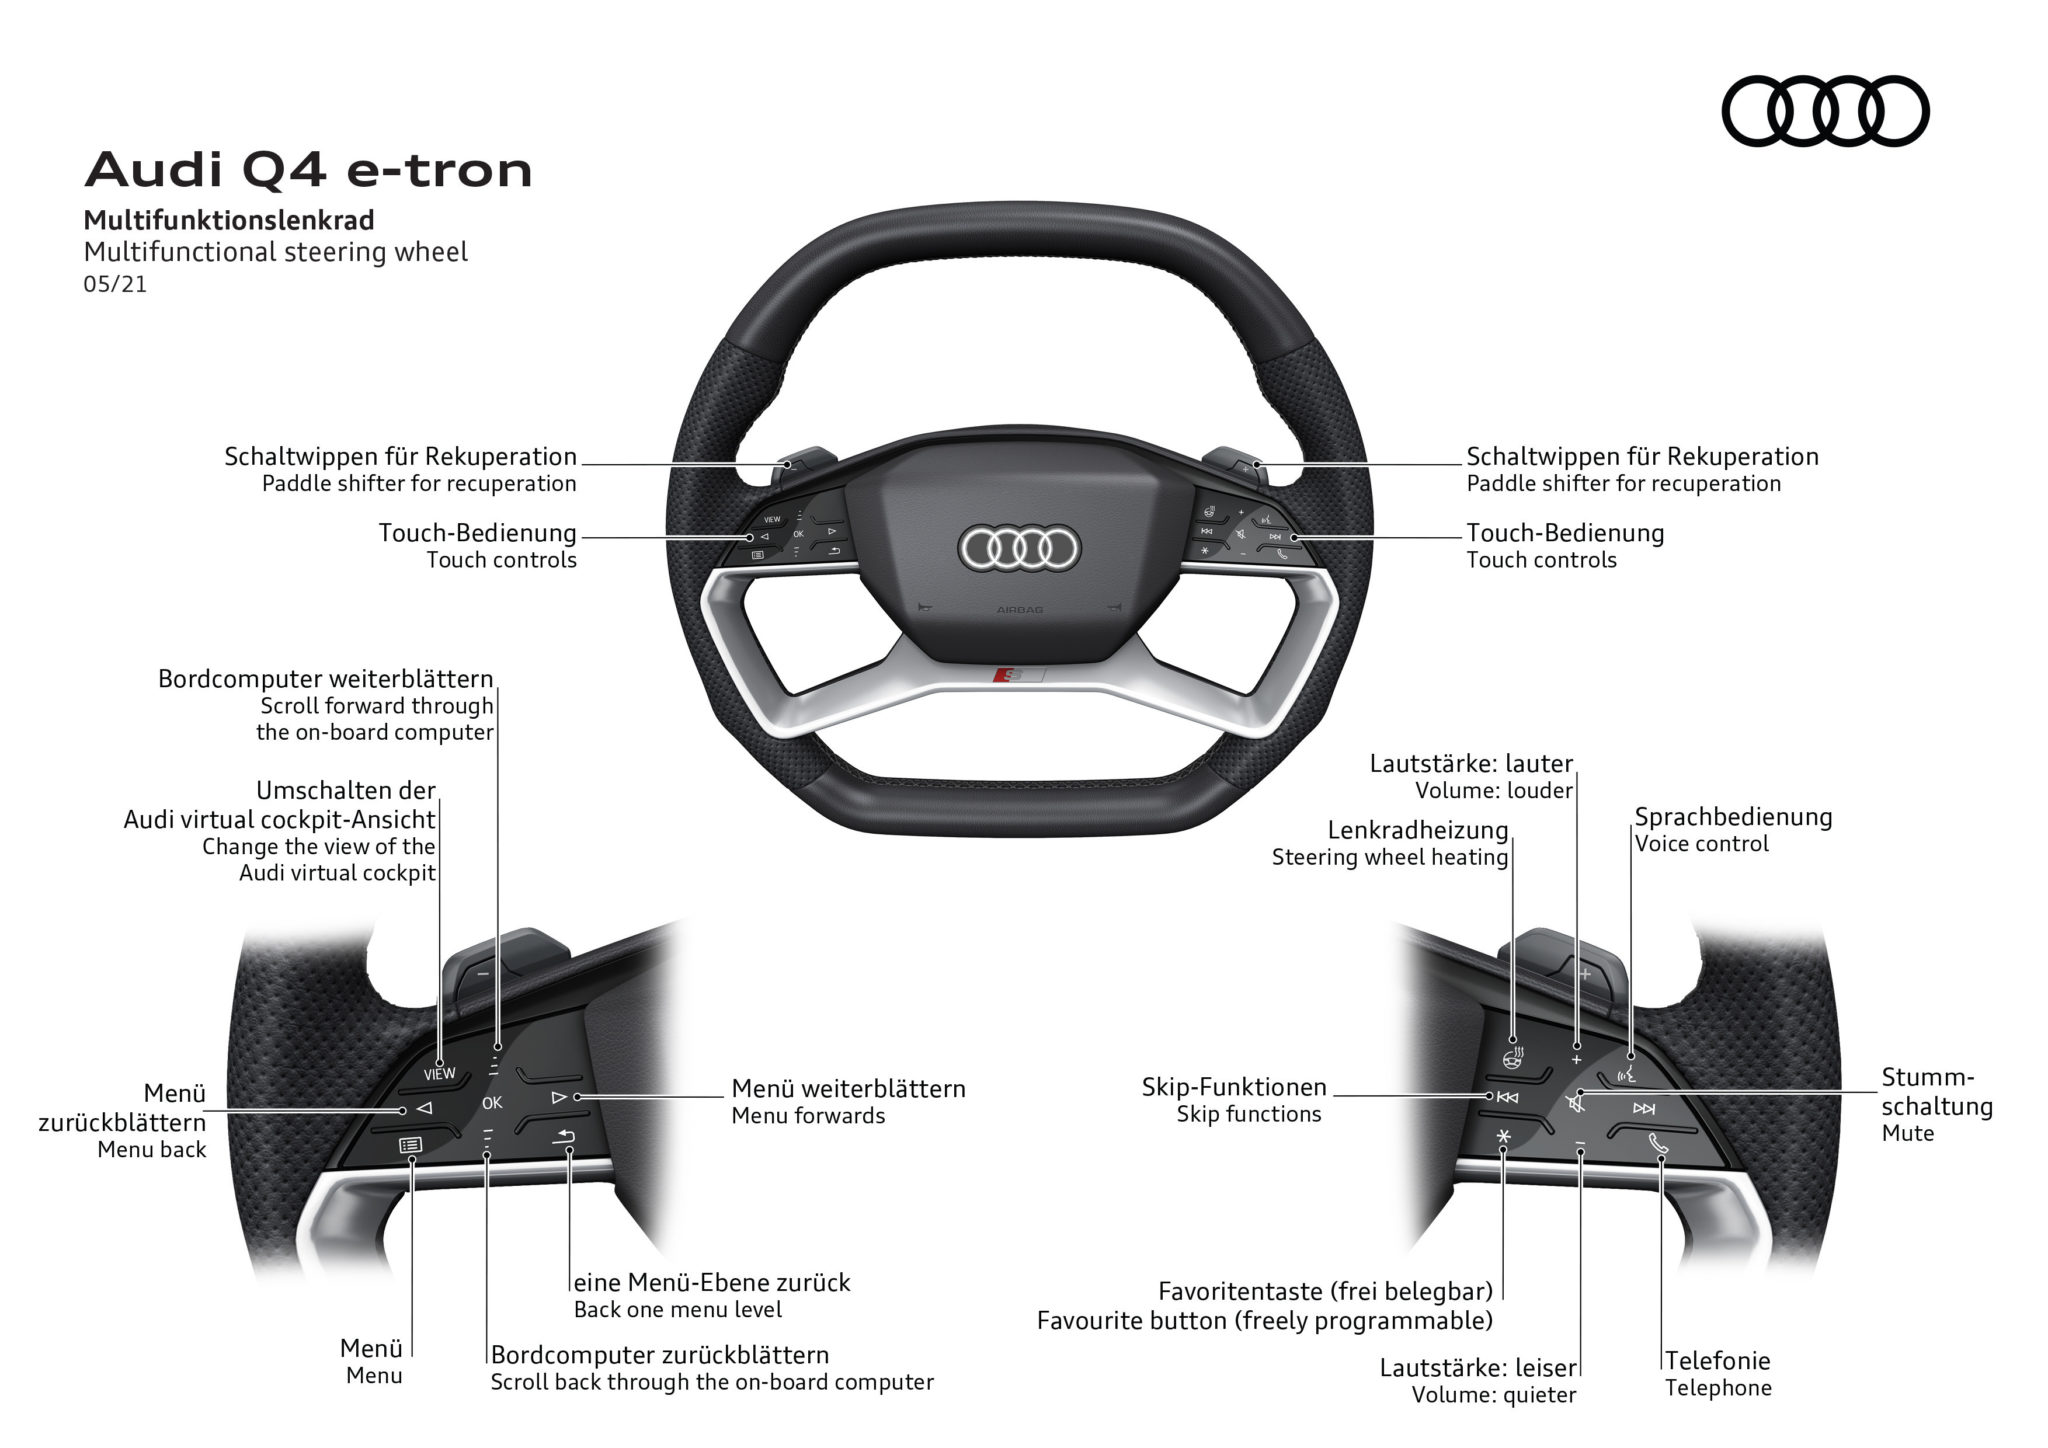 Le volant, si commun et pourtant si évolué  Audi4Addict